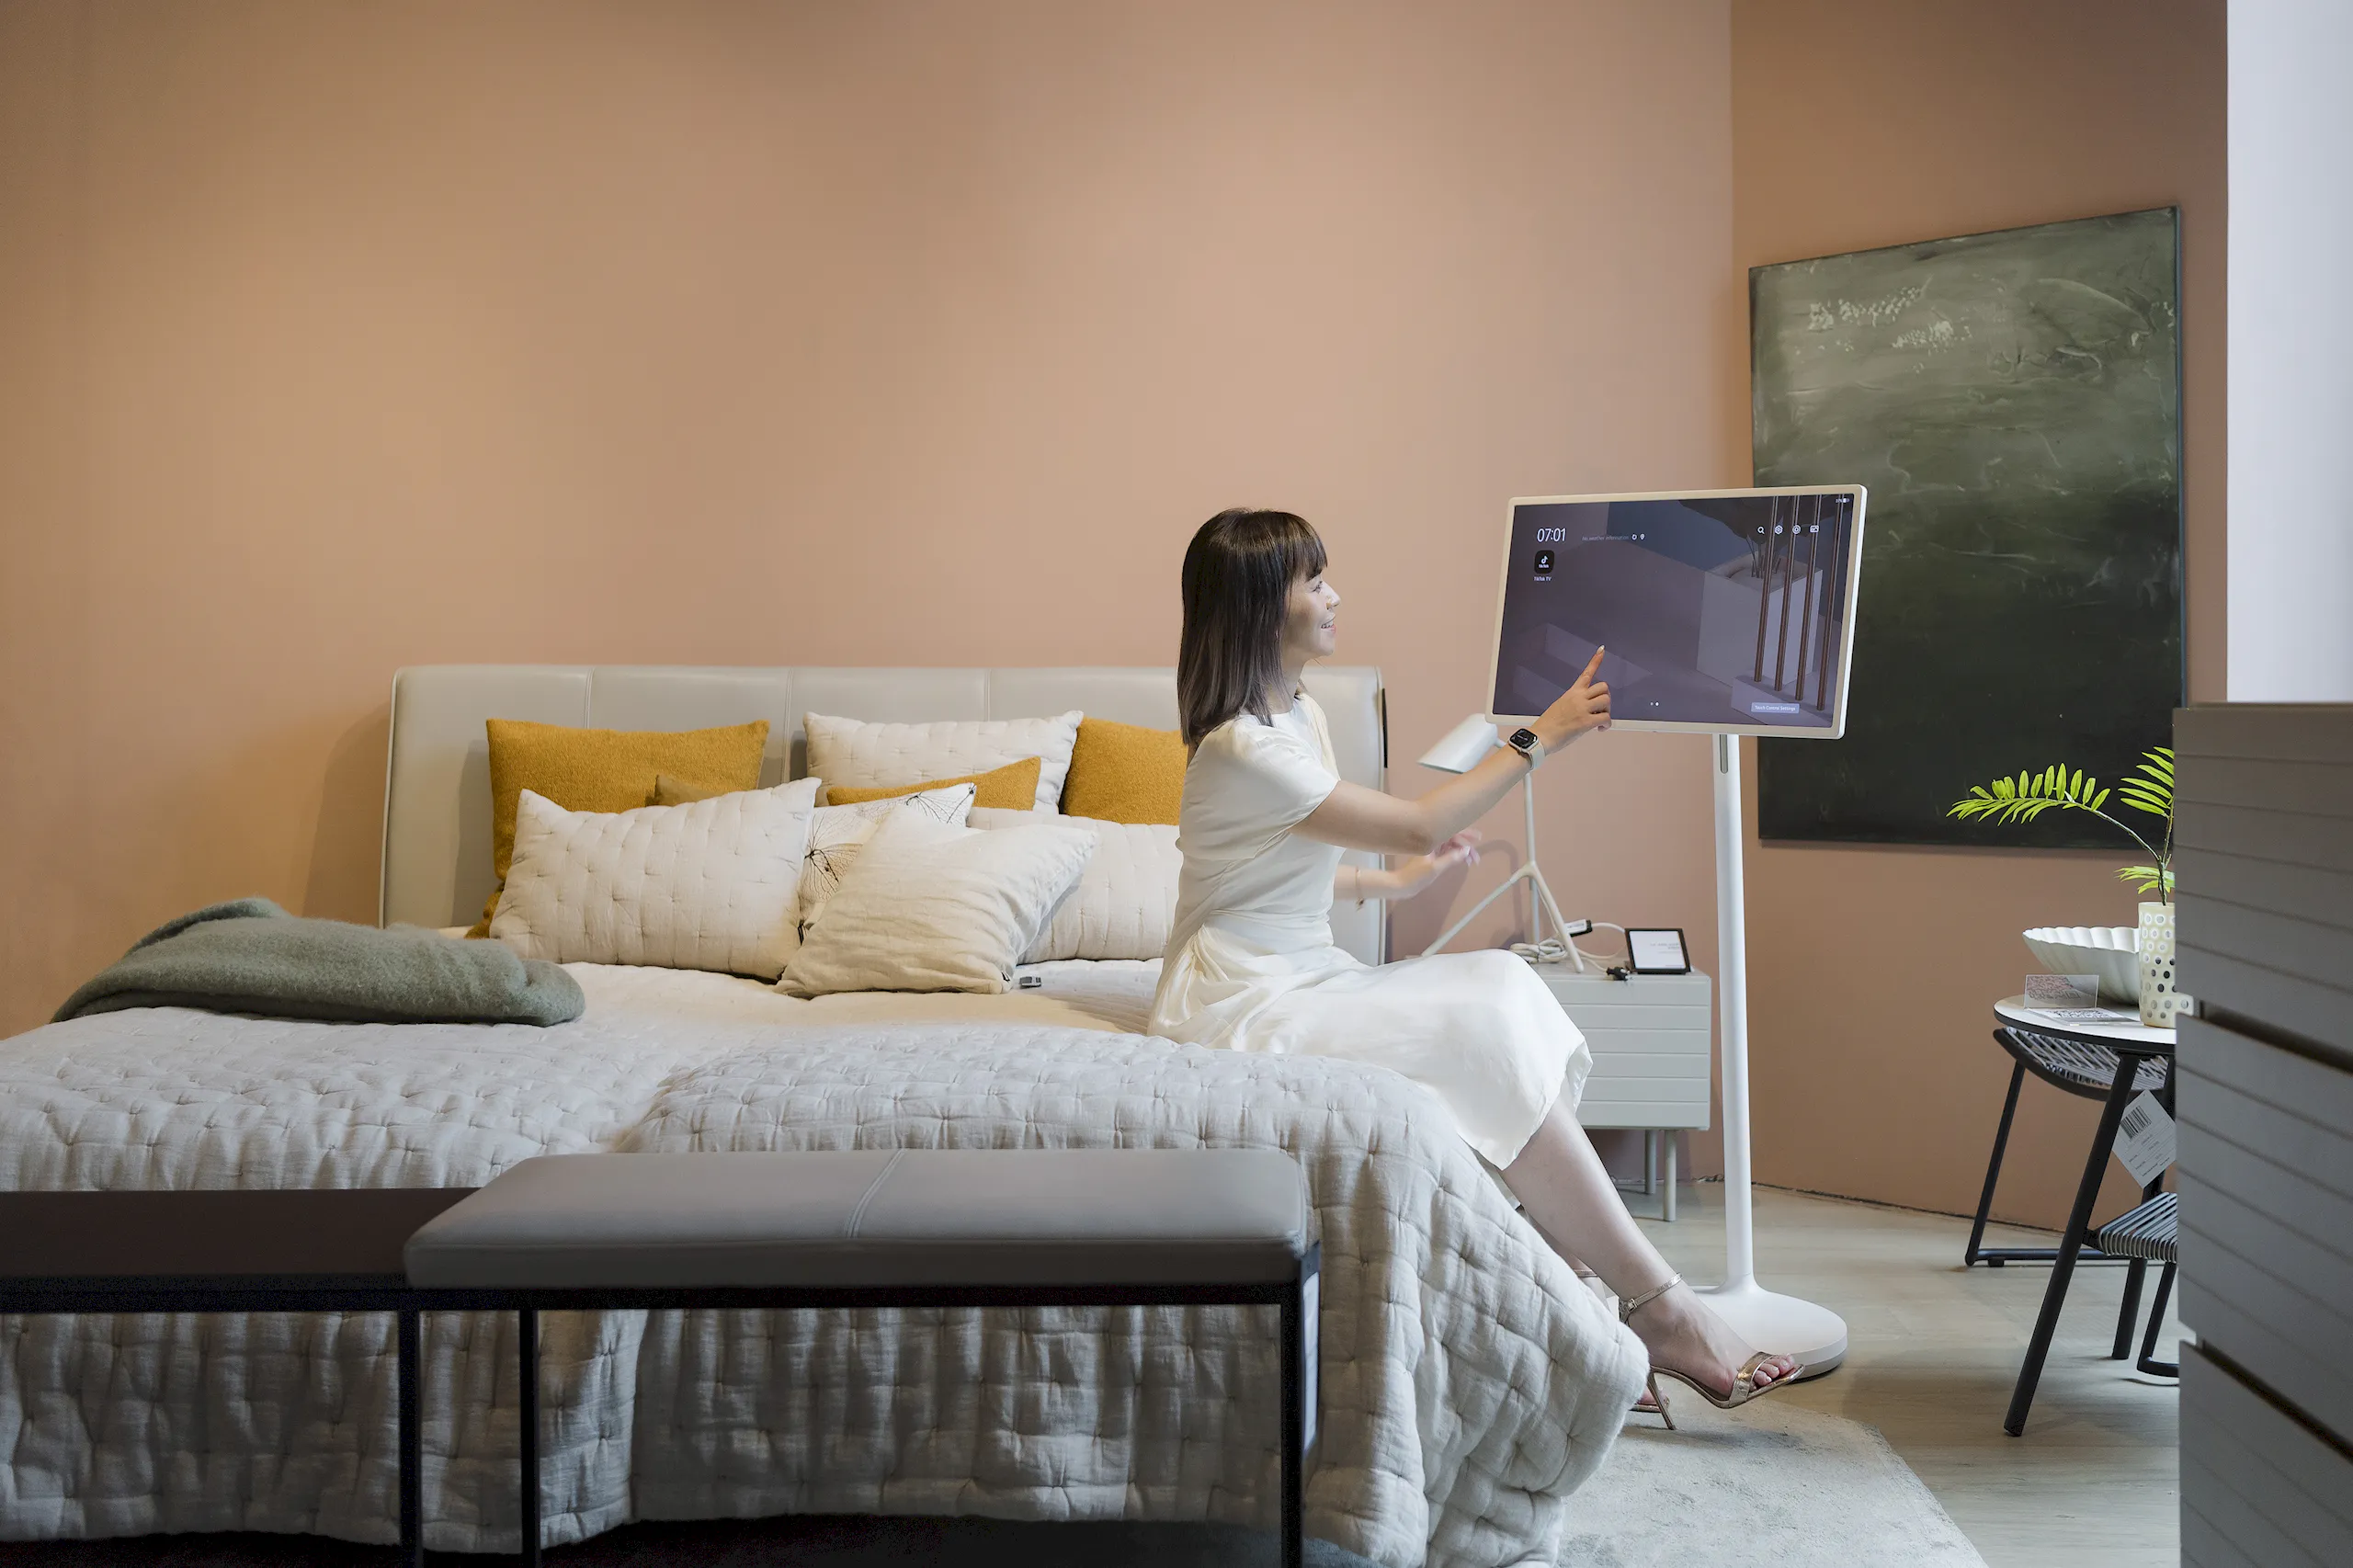 LG và AKA Furniture: Hợp tác nâng cao trải nghiệm sống với sản phẩm cao cấp